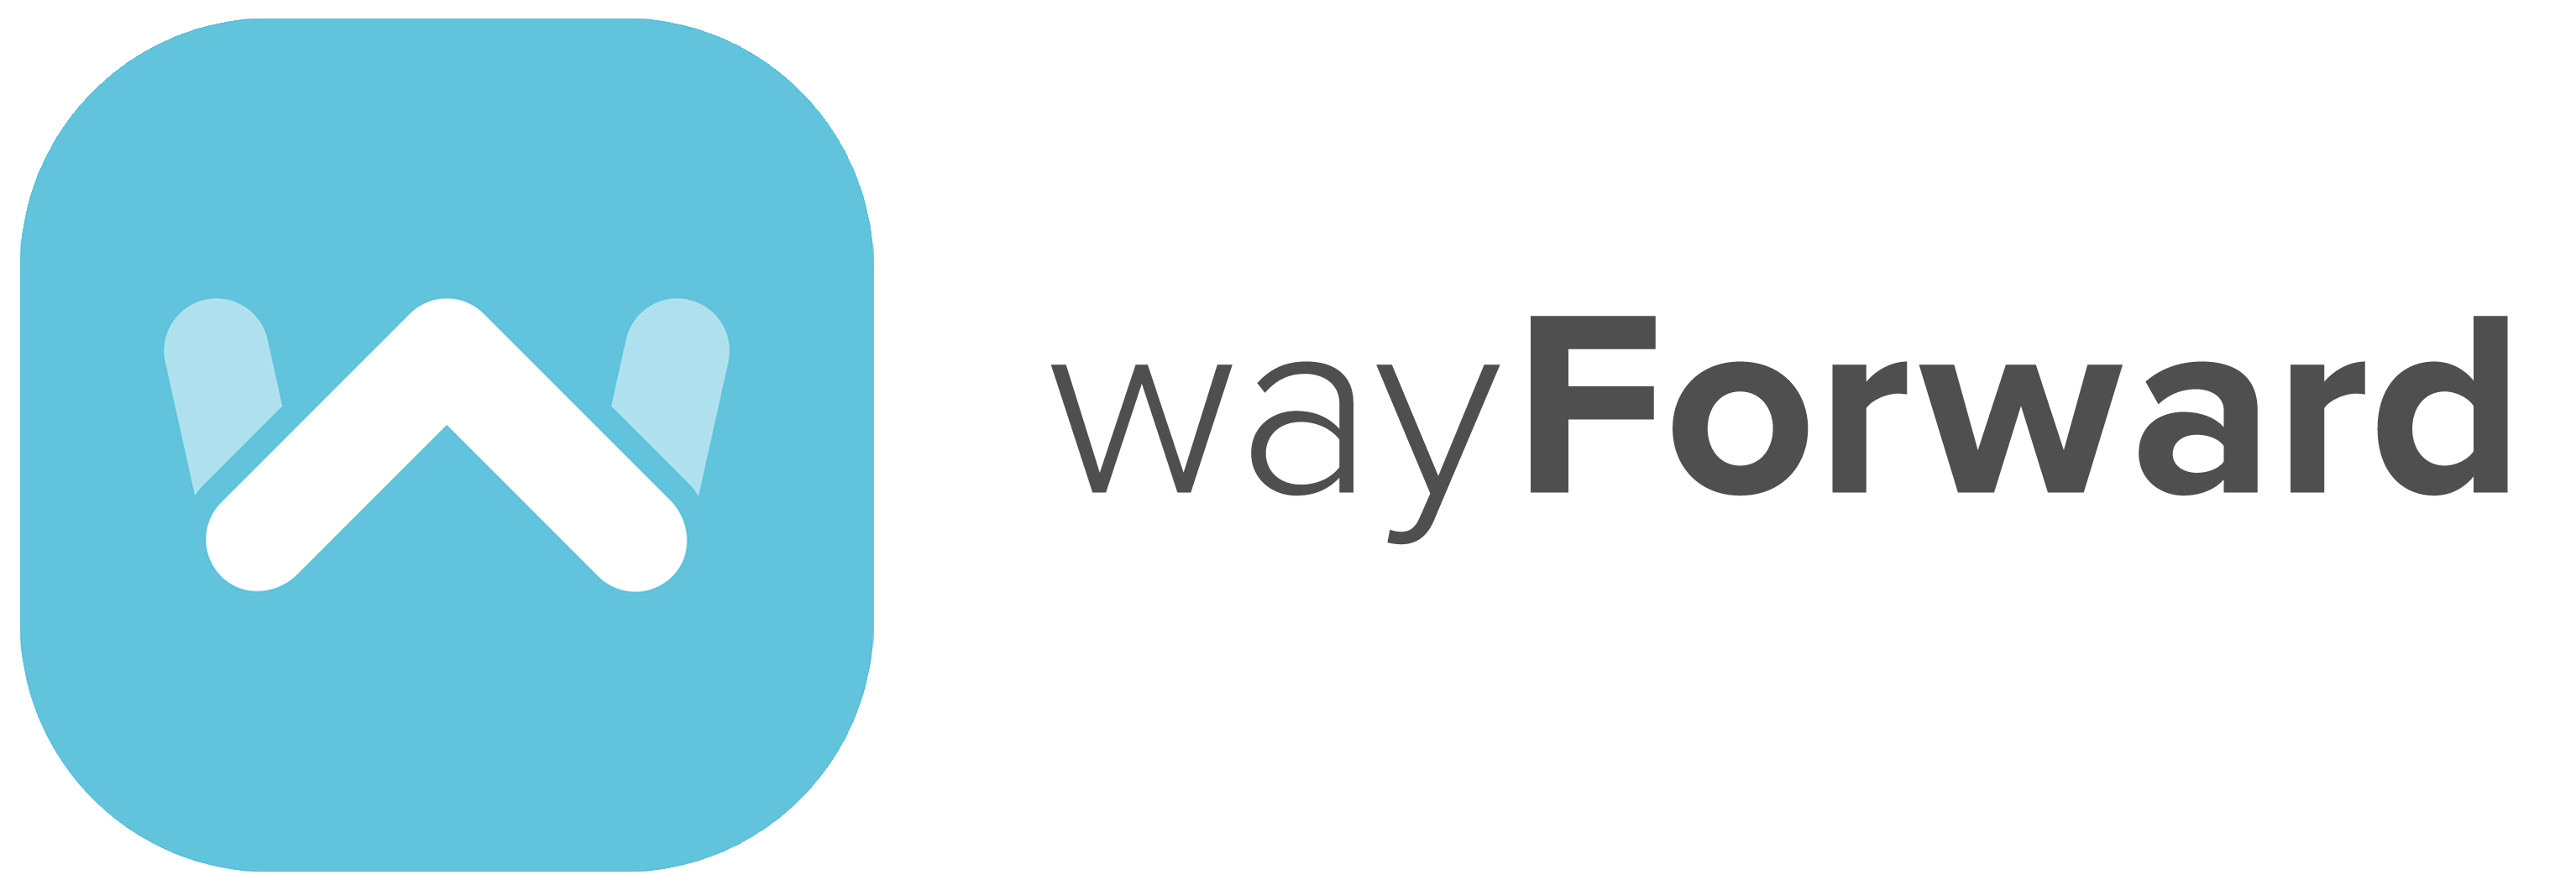 WayForward Recruitment 2020